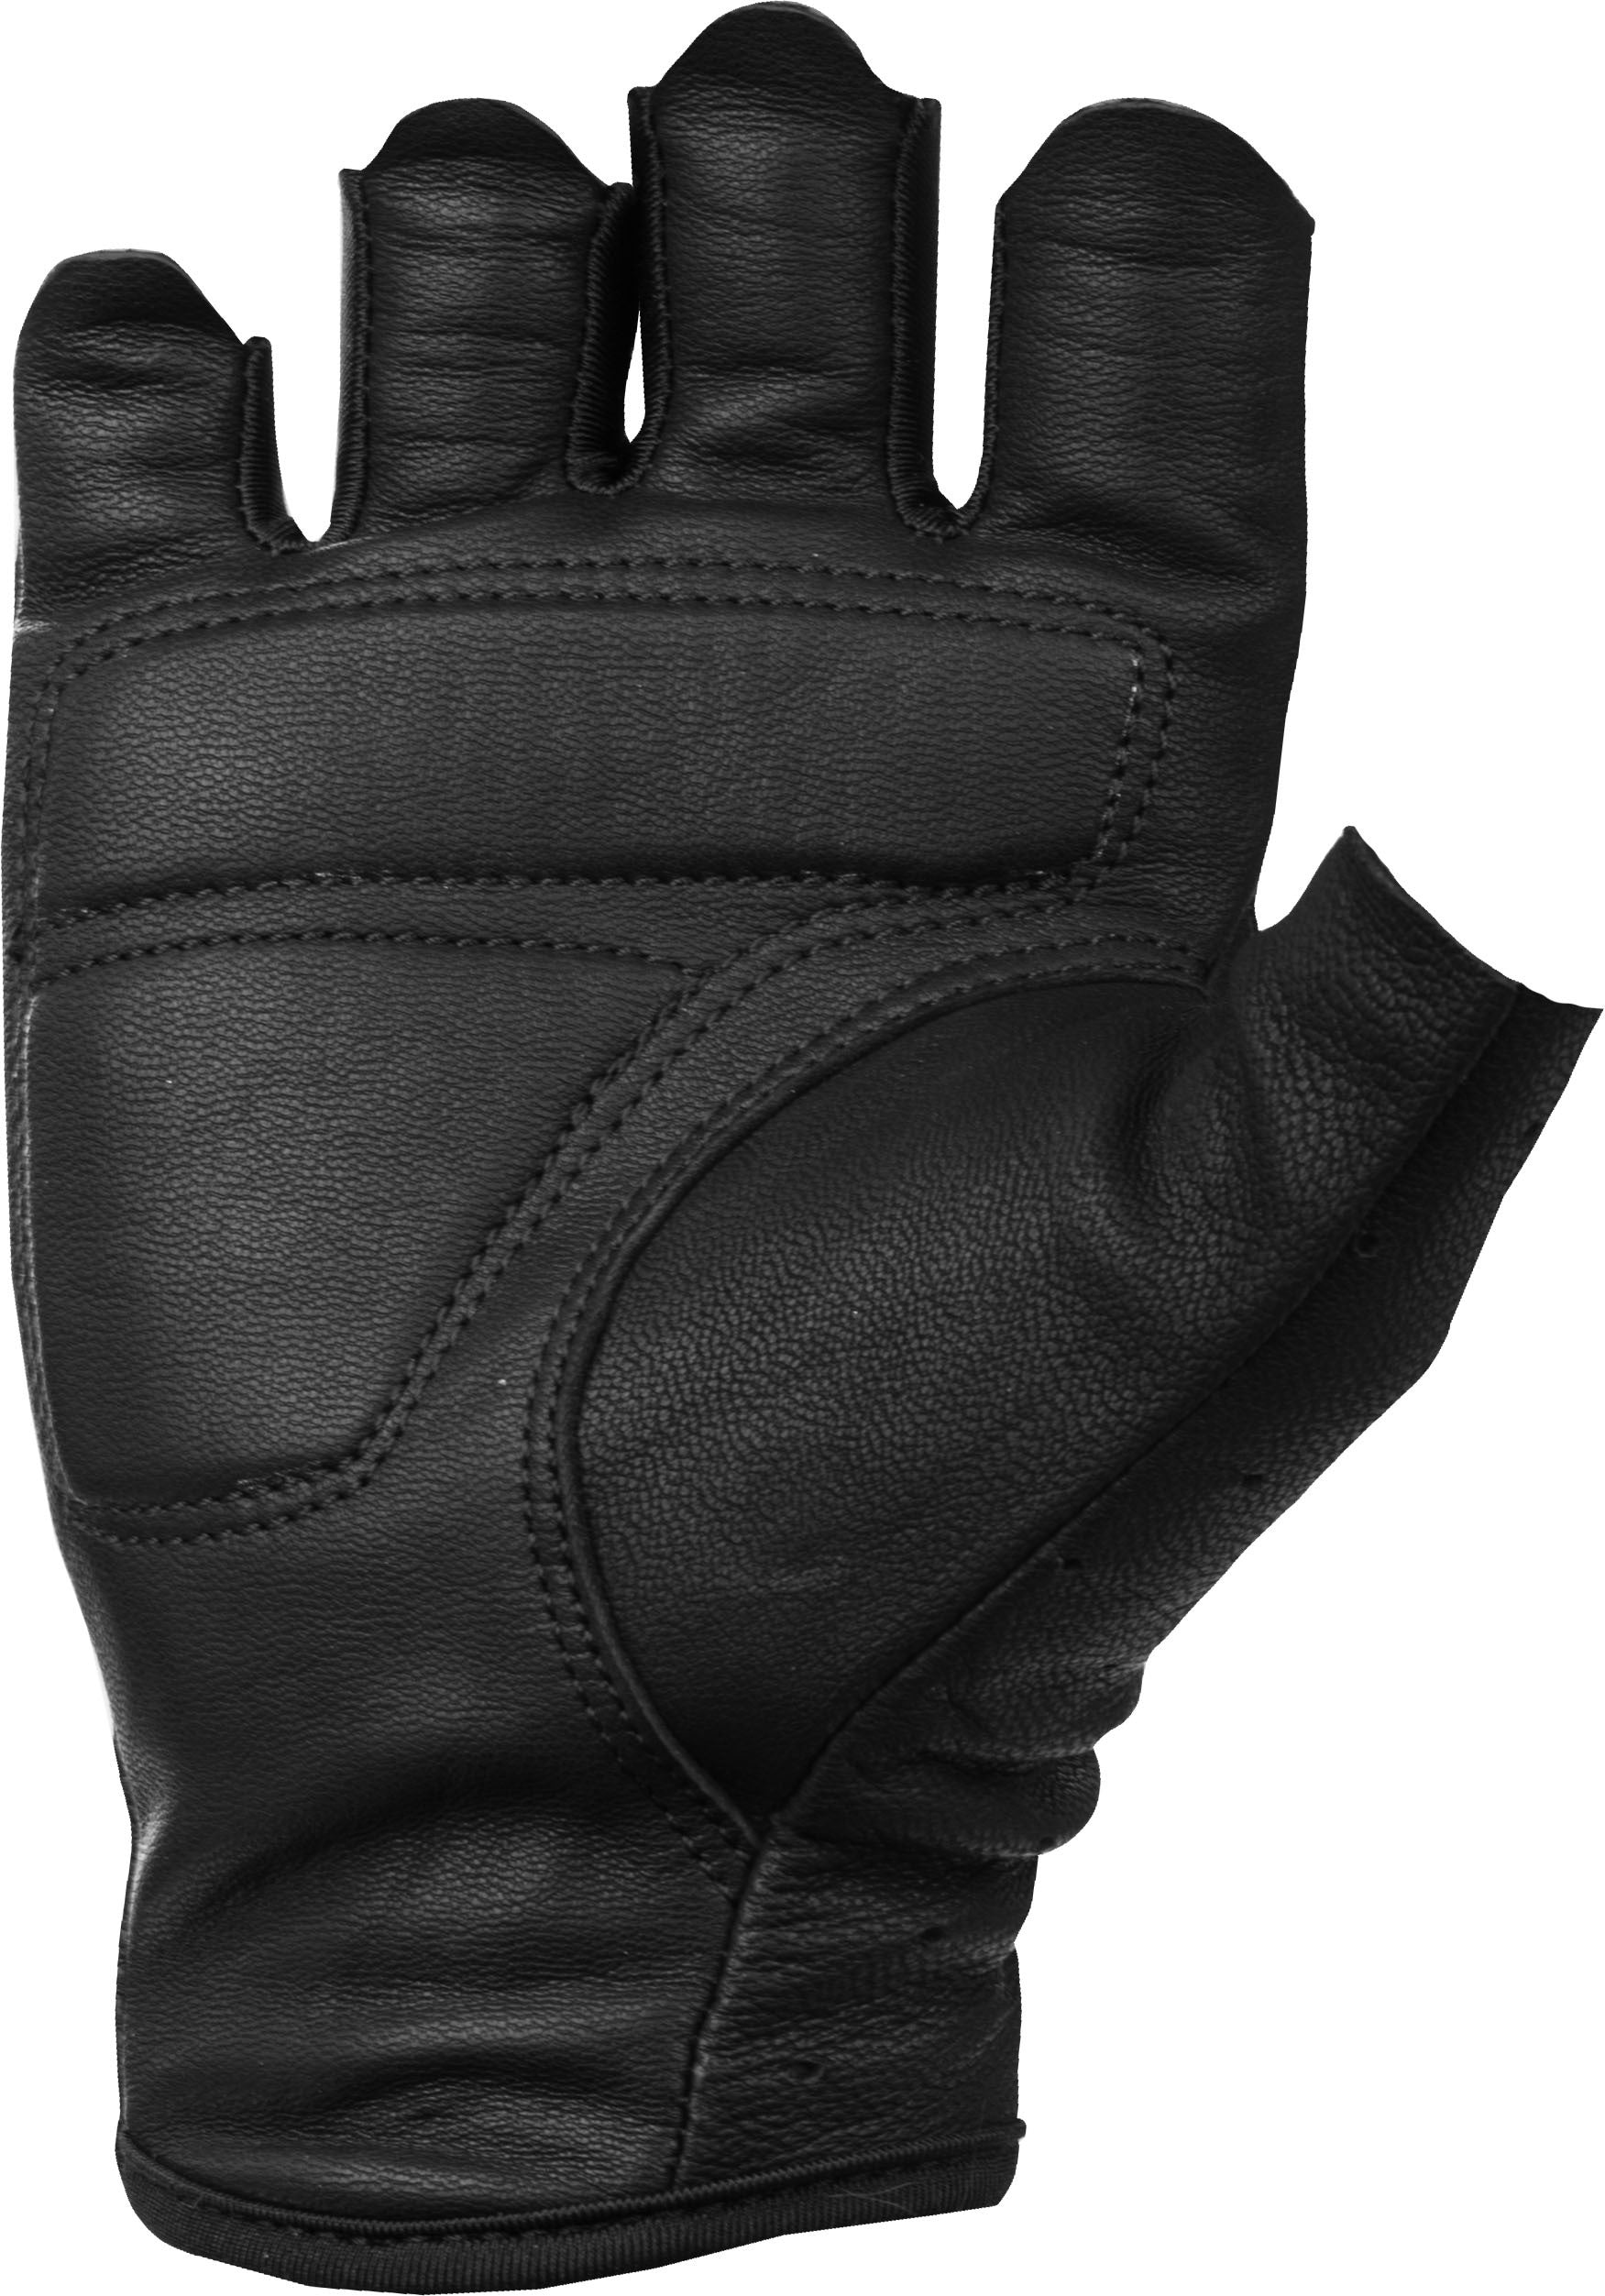 Women's Ranger Gloves Black Md